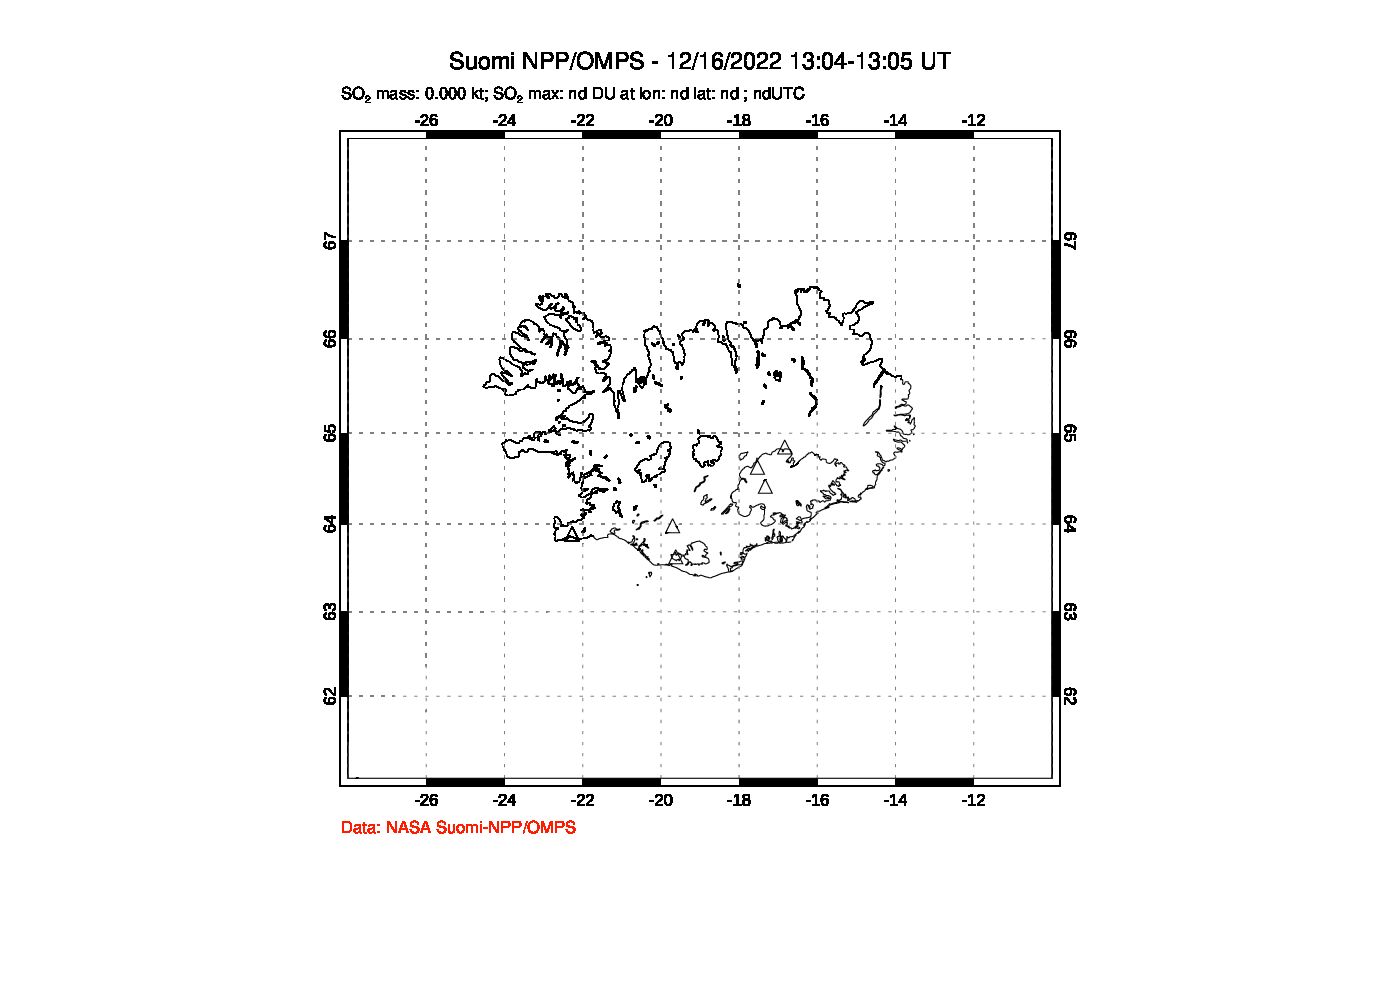 A sulfur dioxide image over Iceland on Dec 16, 2022.